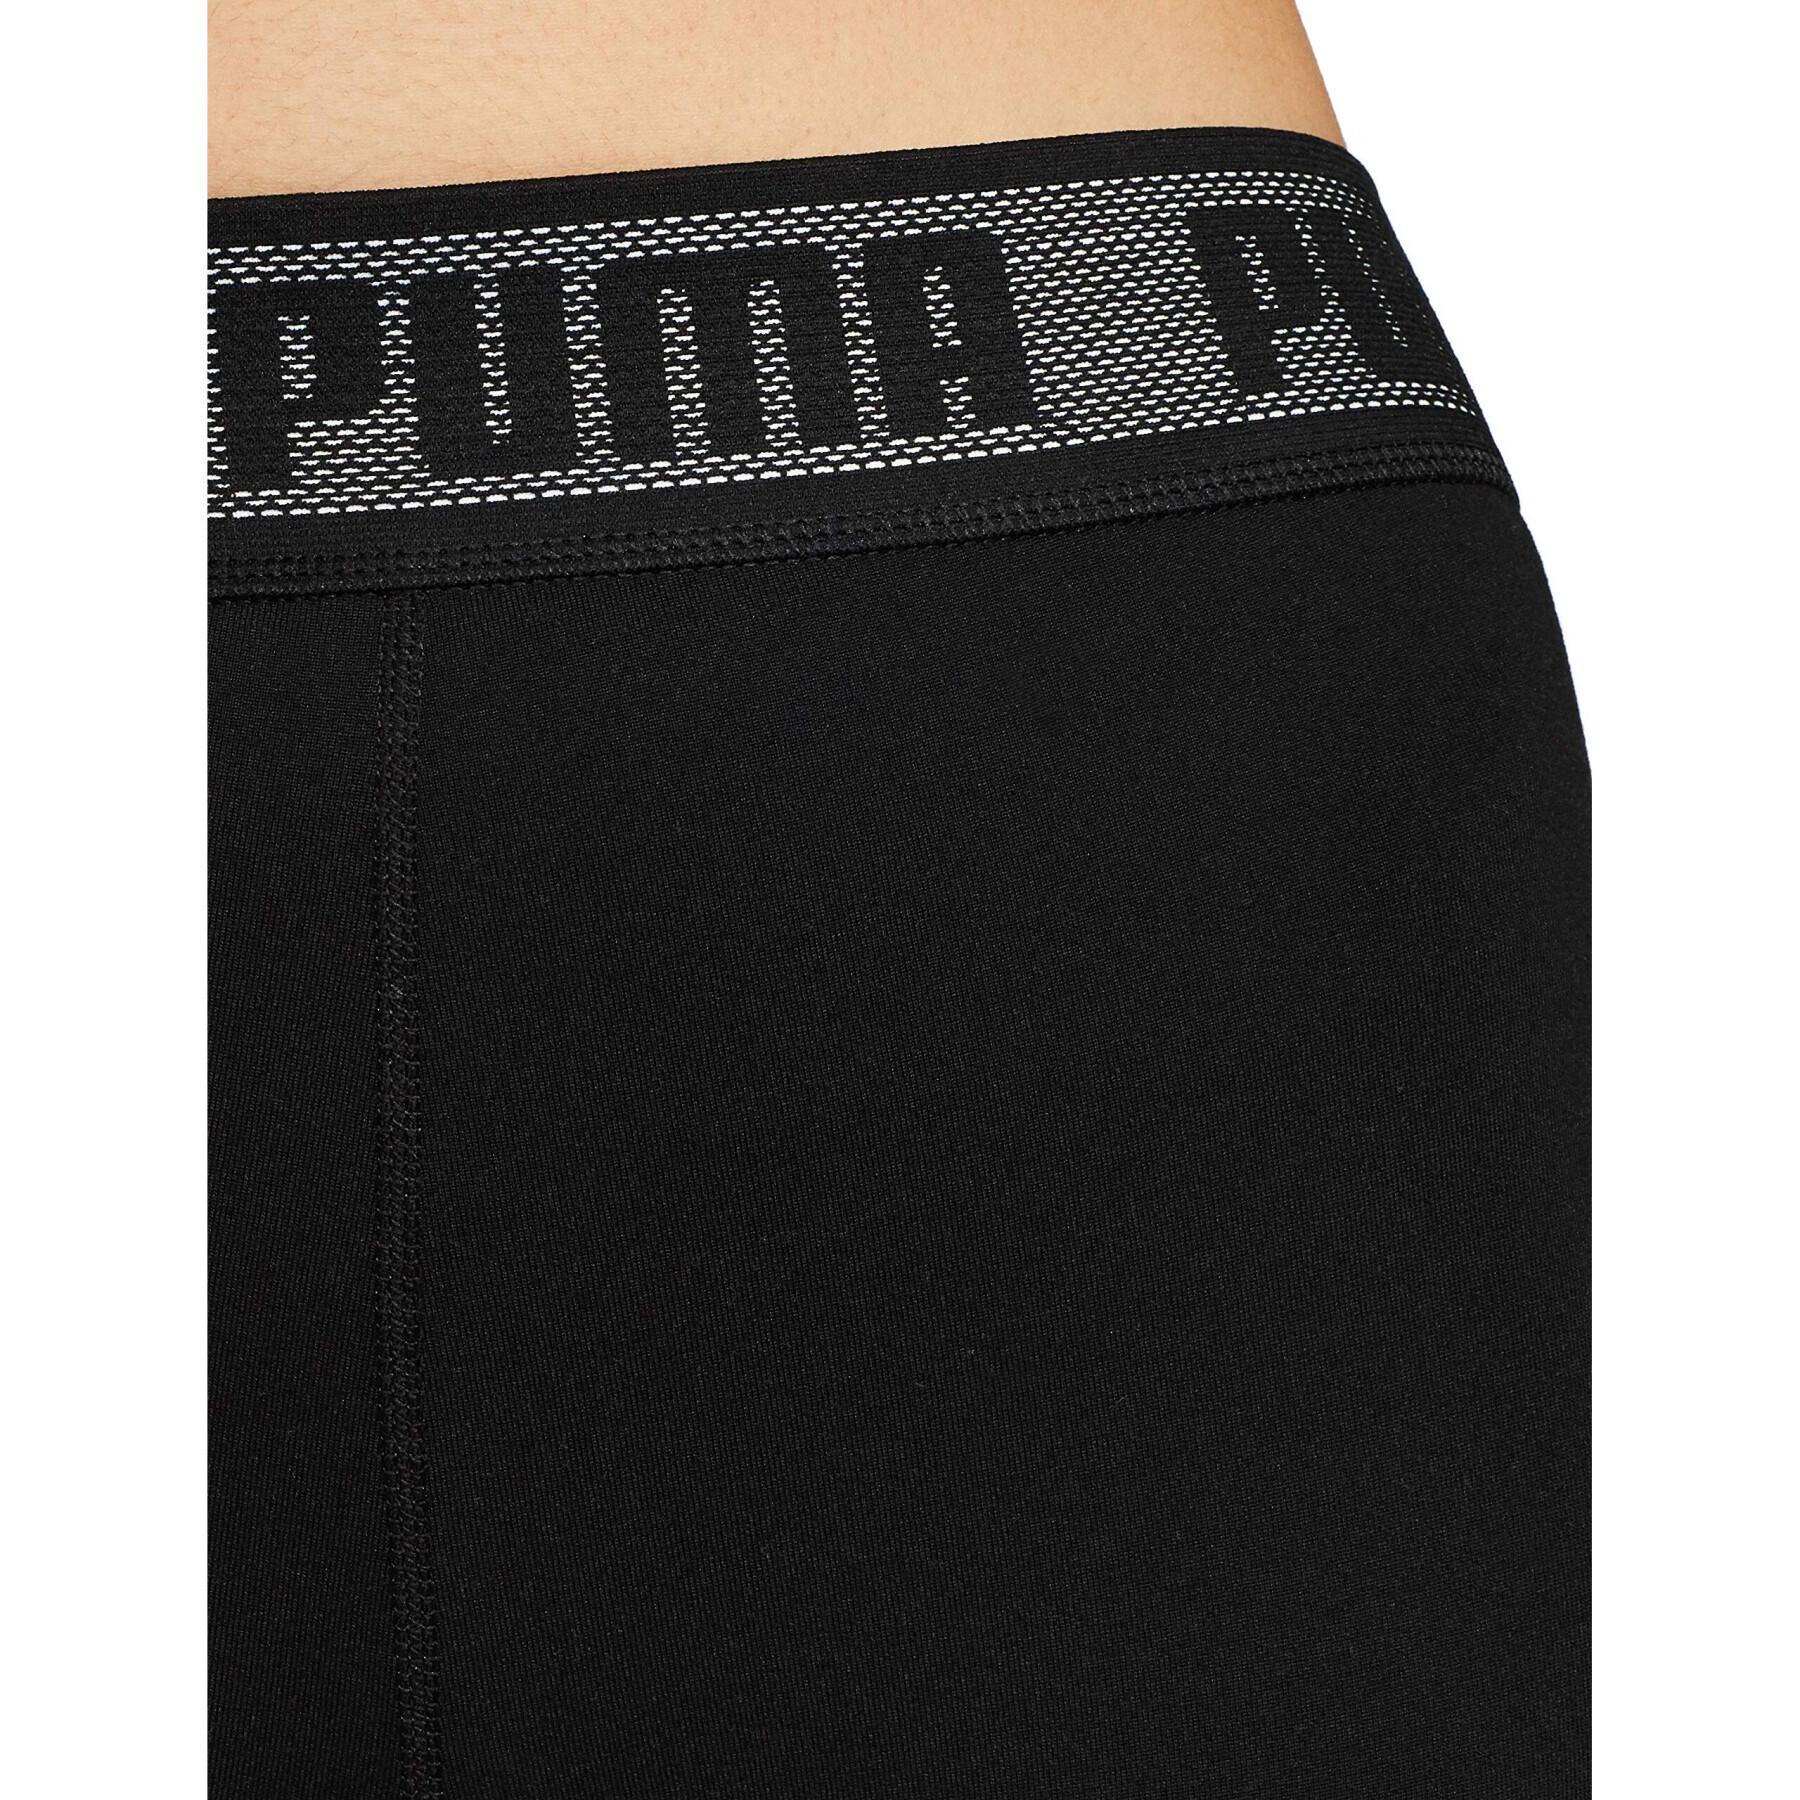 Spodnie damskie Puma 3/4 tight